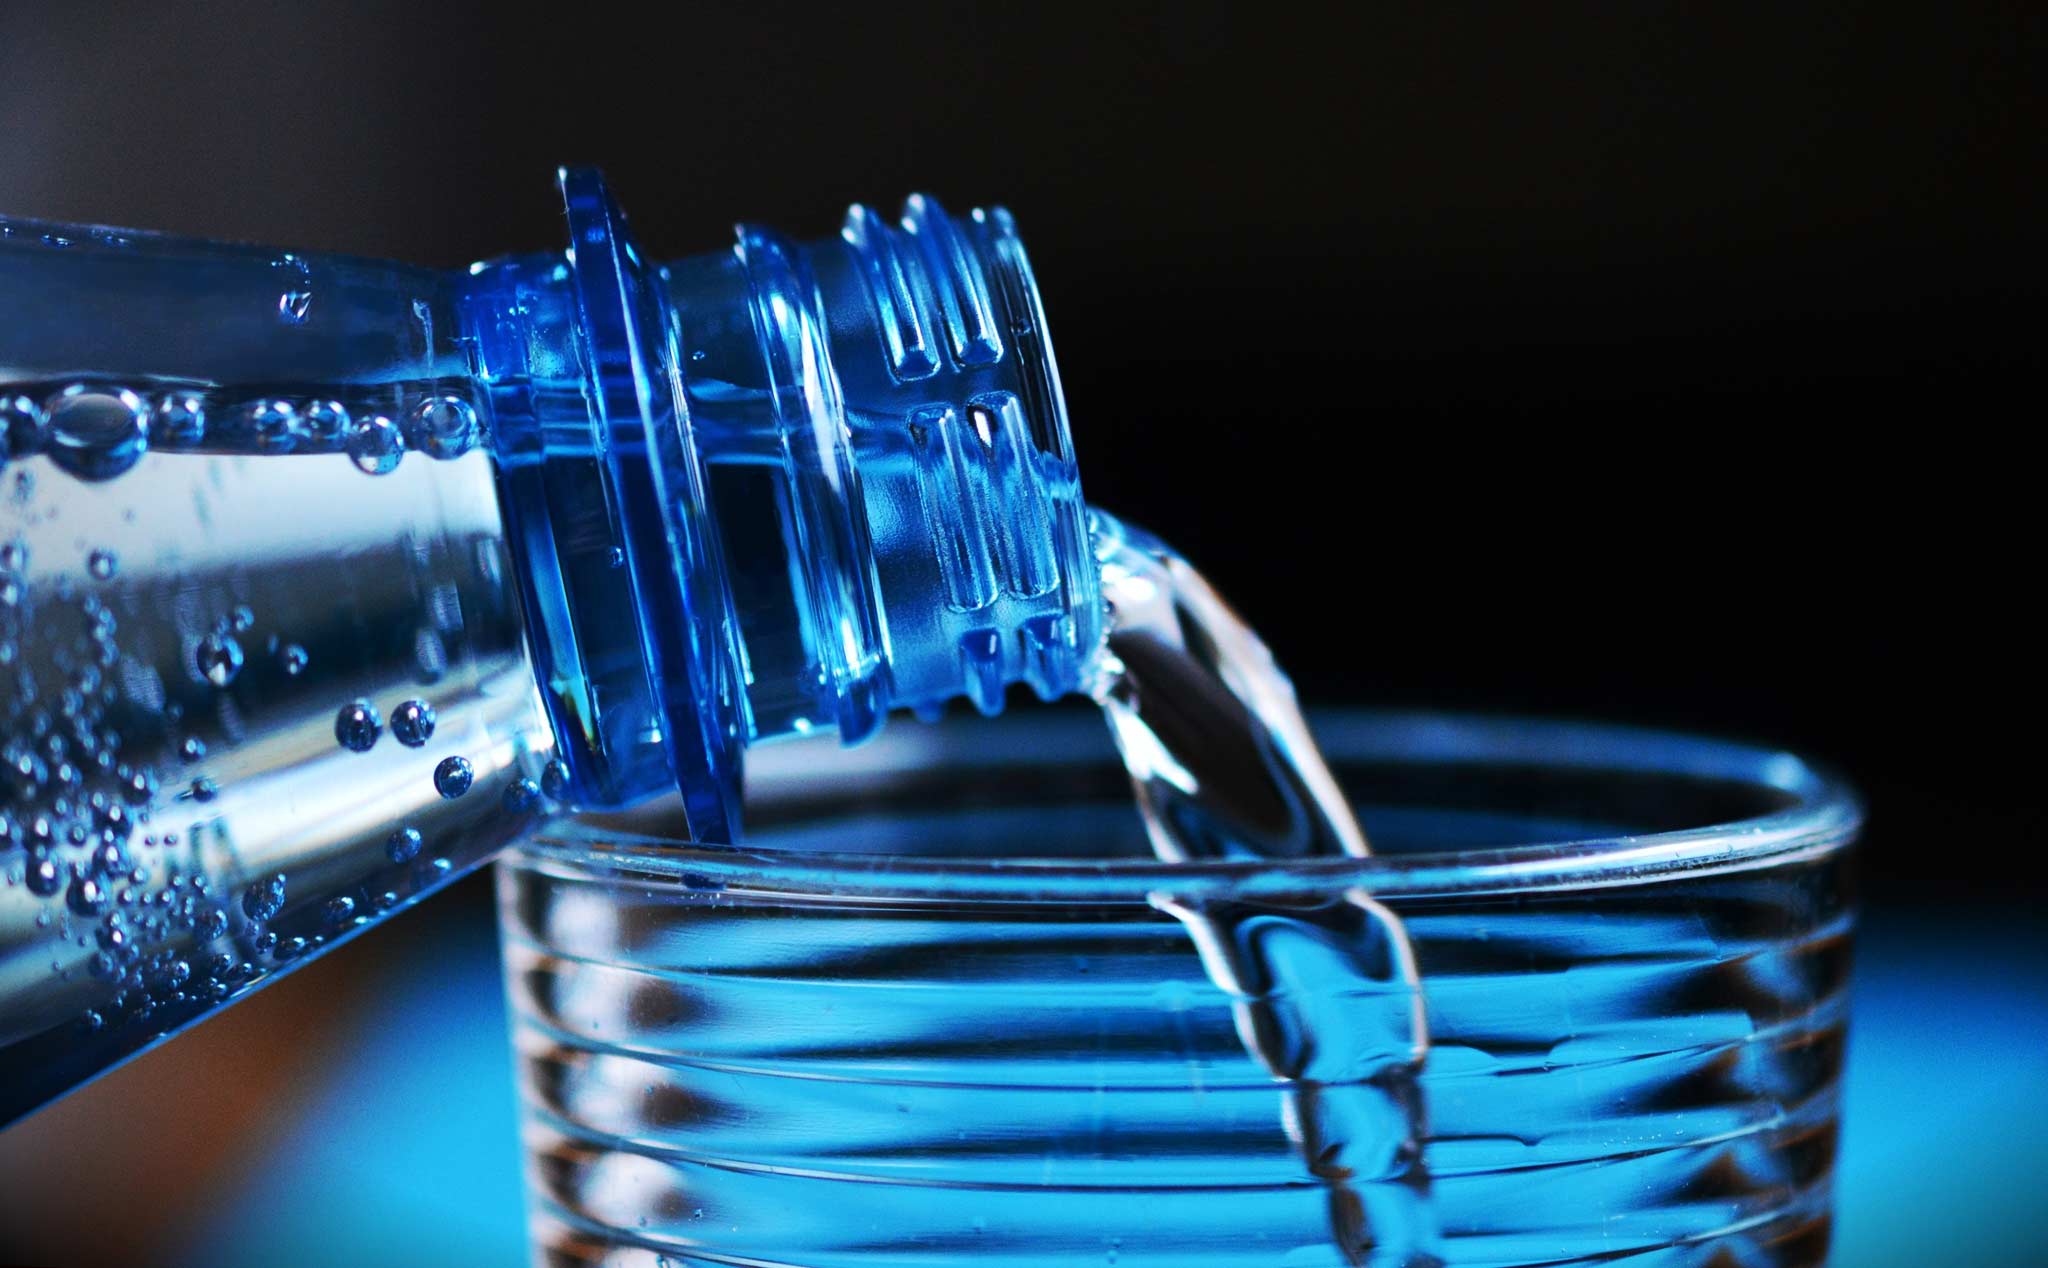 Tìm thấy chất hóa học có thể gây vô sinh trong chai nhựa